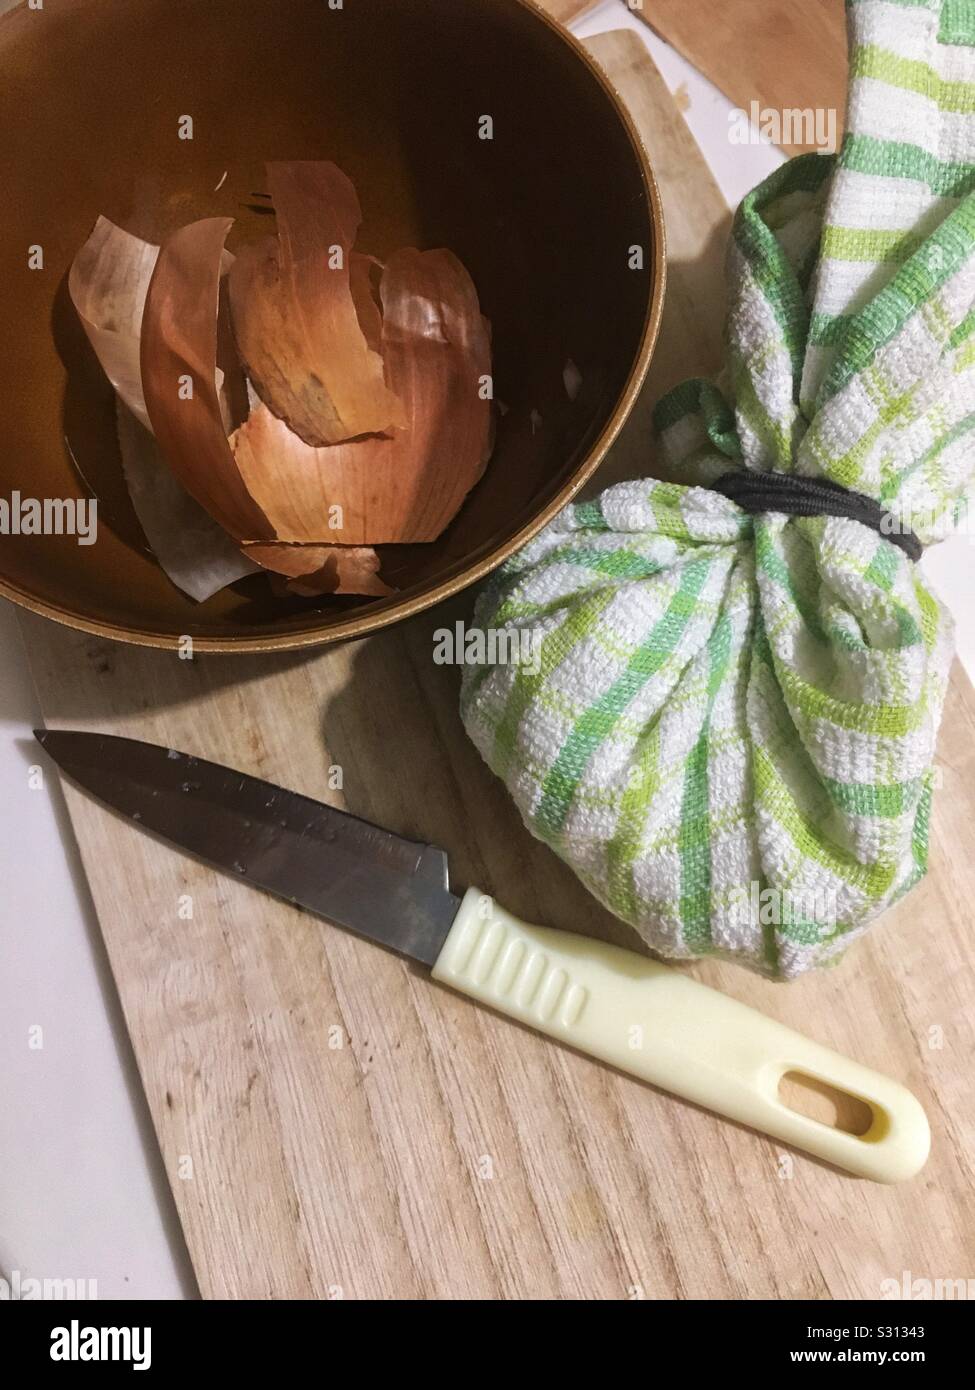 Una tabla de cortar con un cuchillo, una toalla de cocina bundle y un tazón con piel de cebolla, simbolizando la elaboración de un remedio casero para dolor de oído Foto de stock